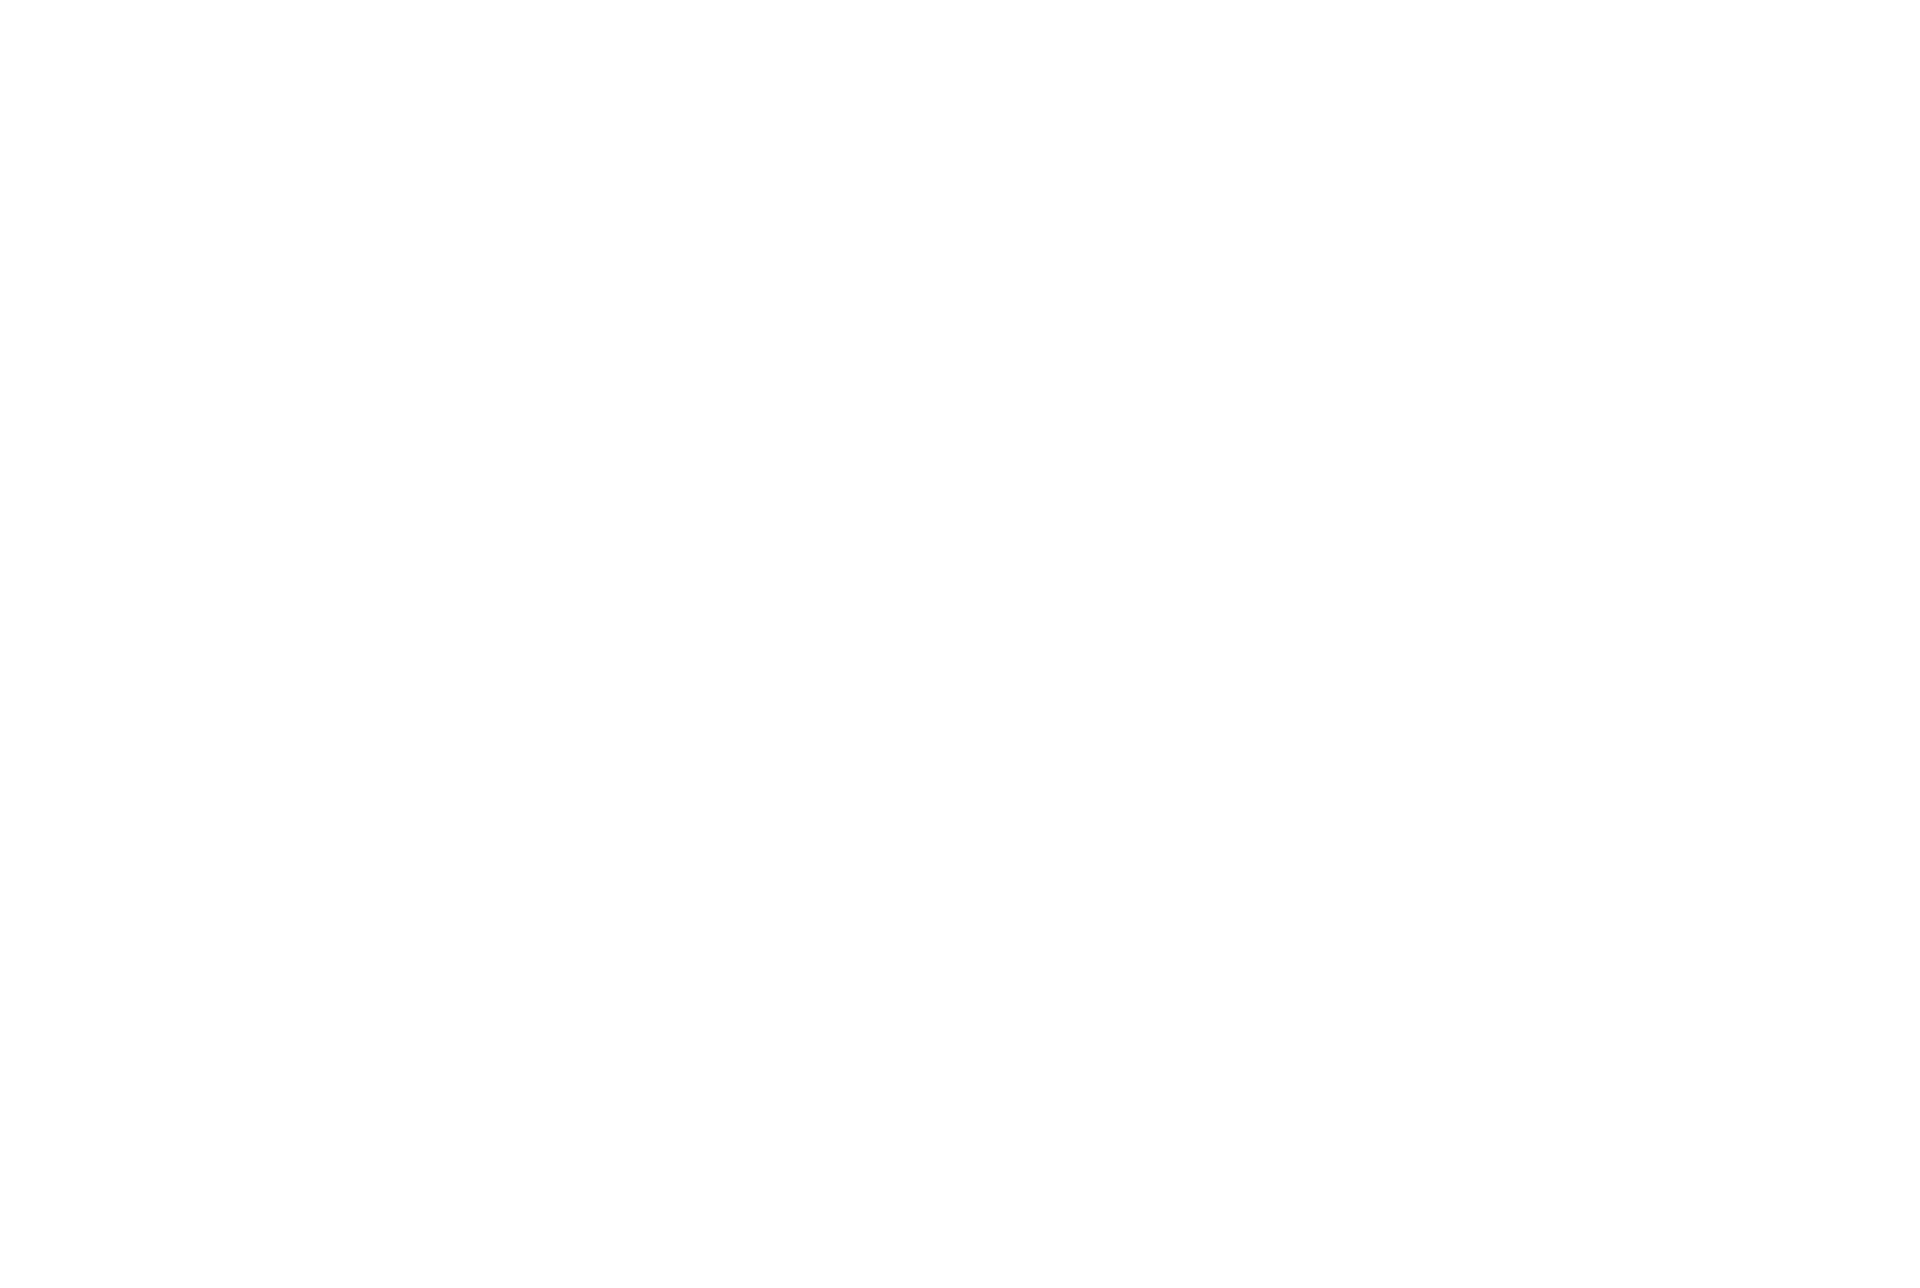 The Village Spirit Collective